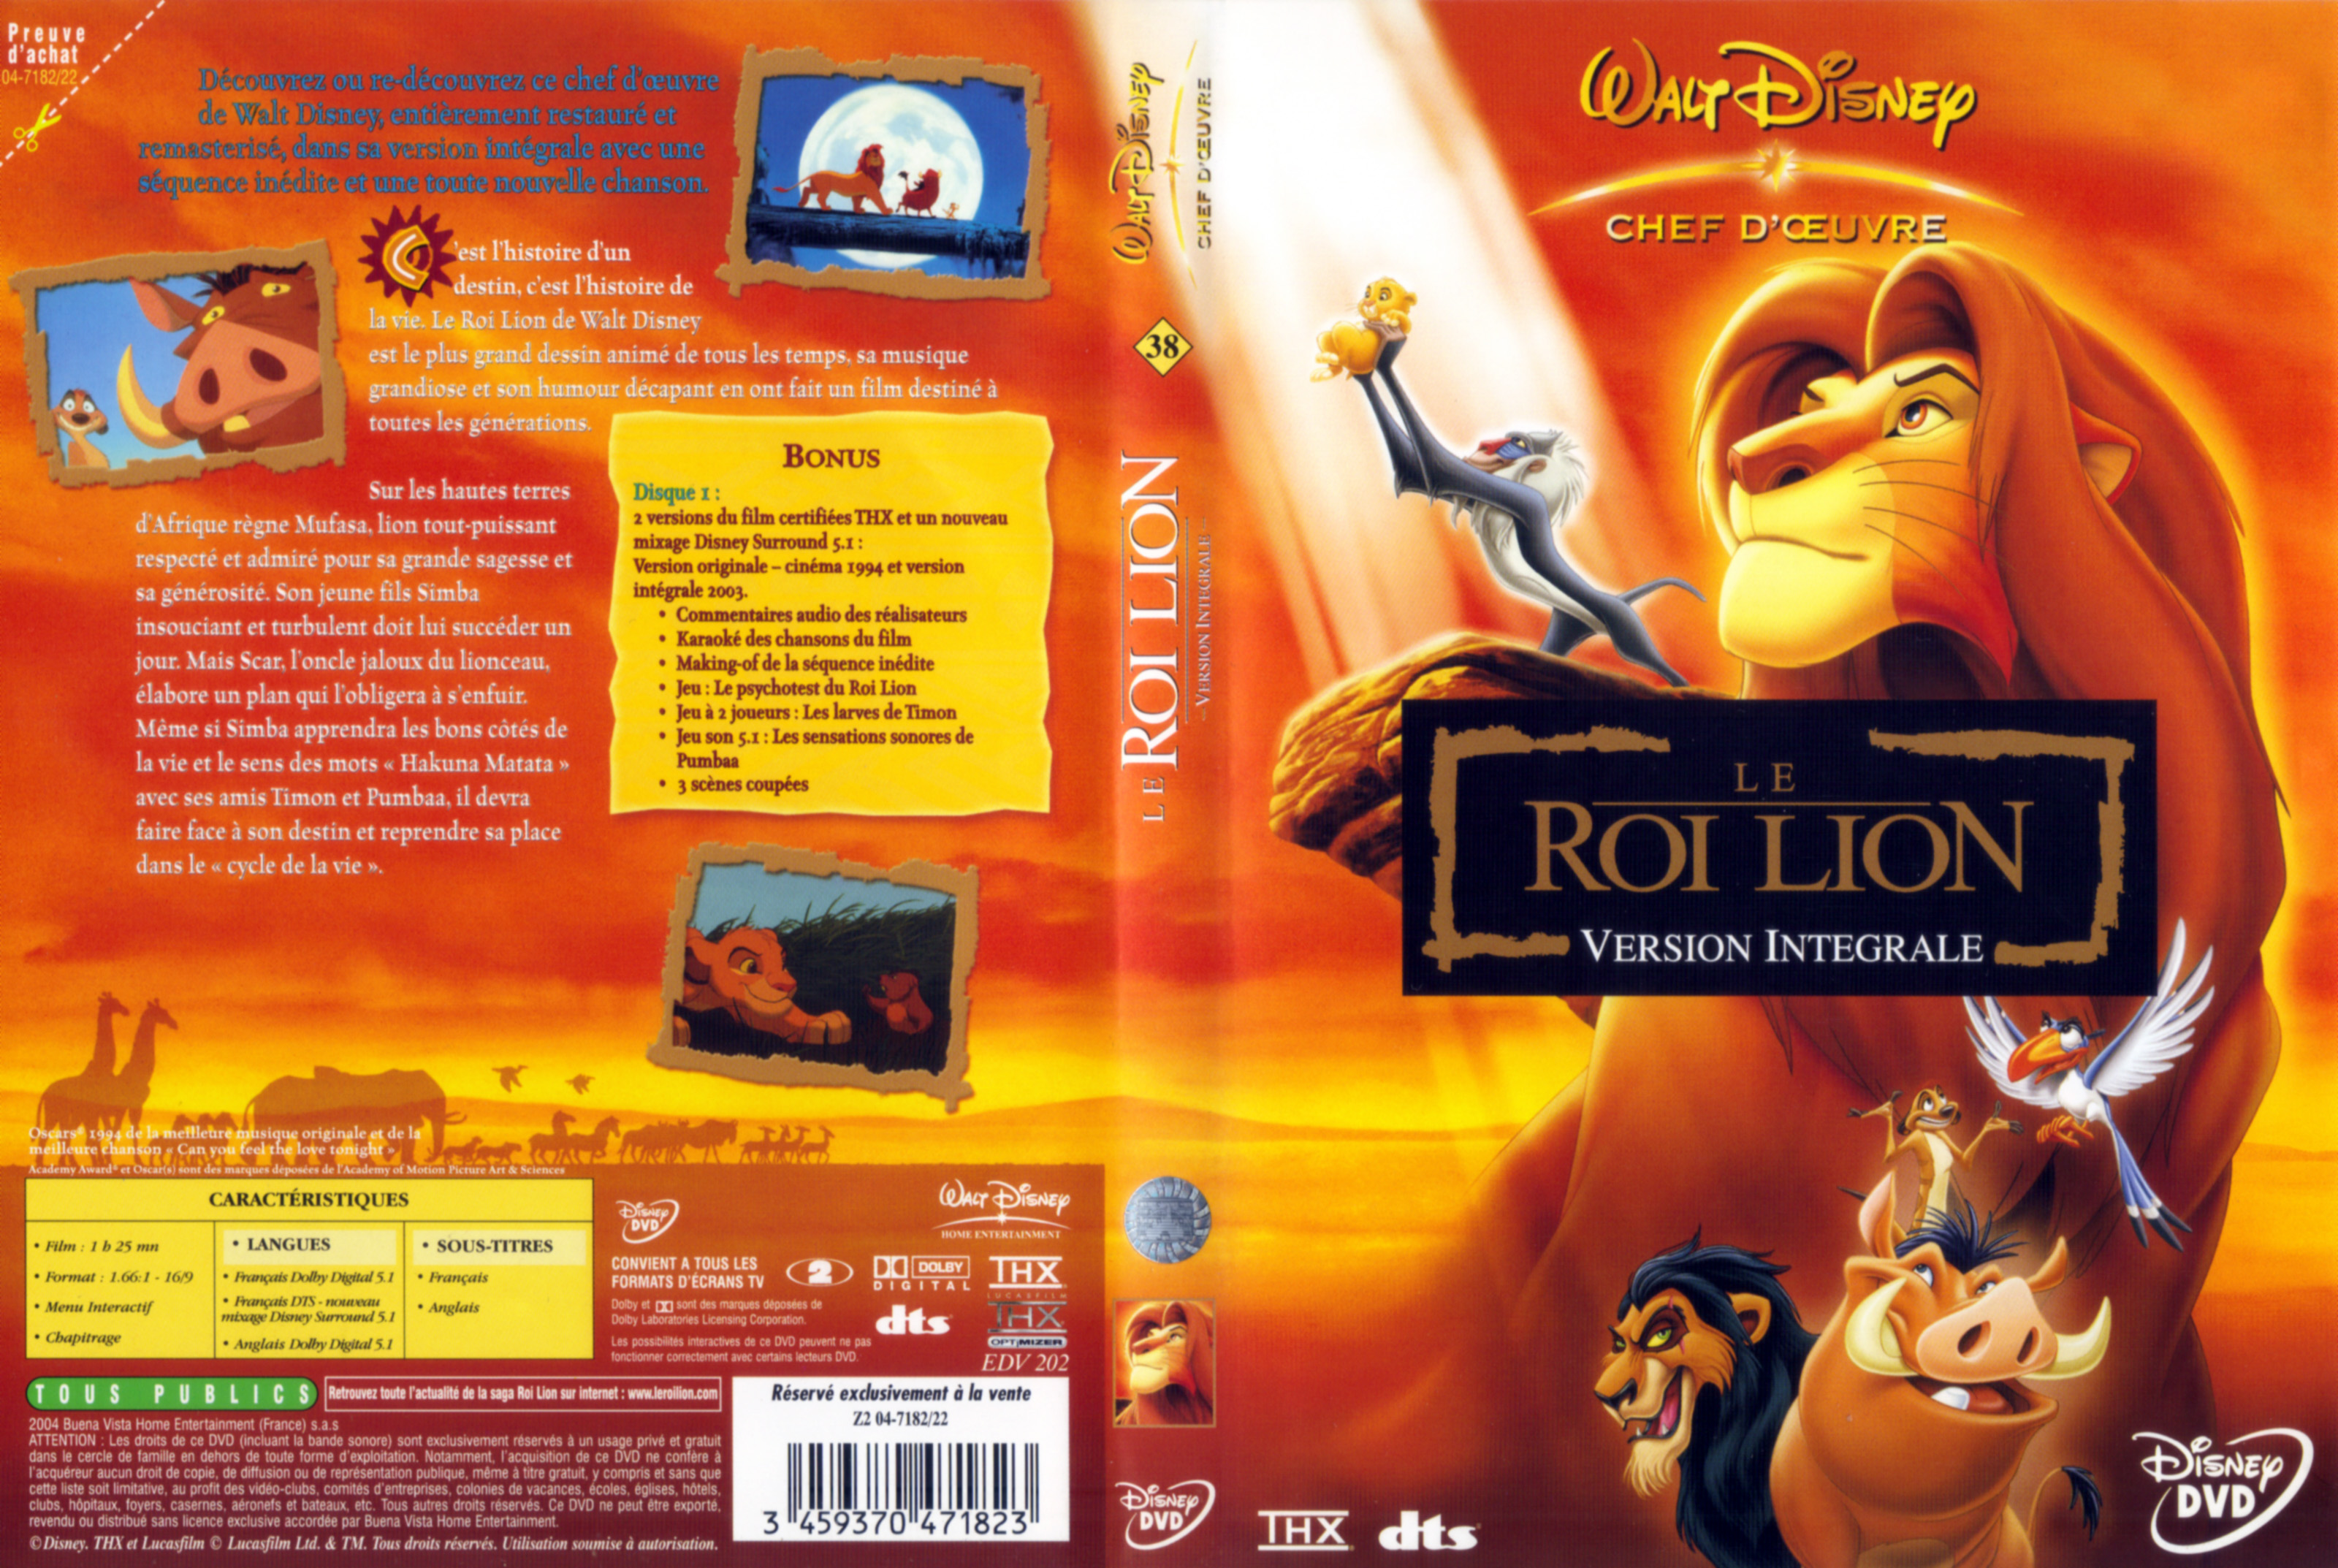 Jaquette DVD Le roi lion v4